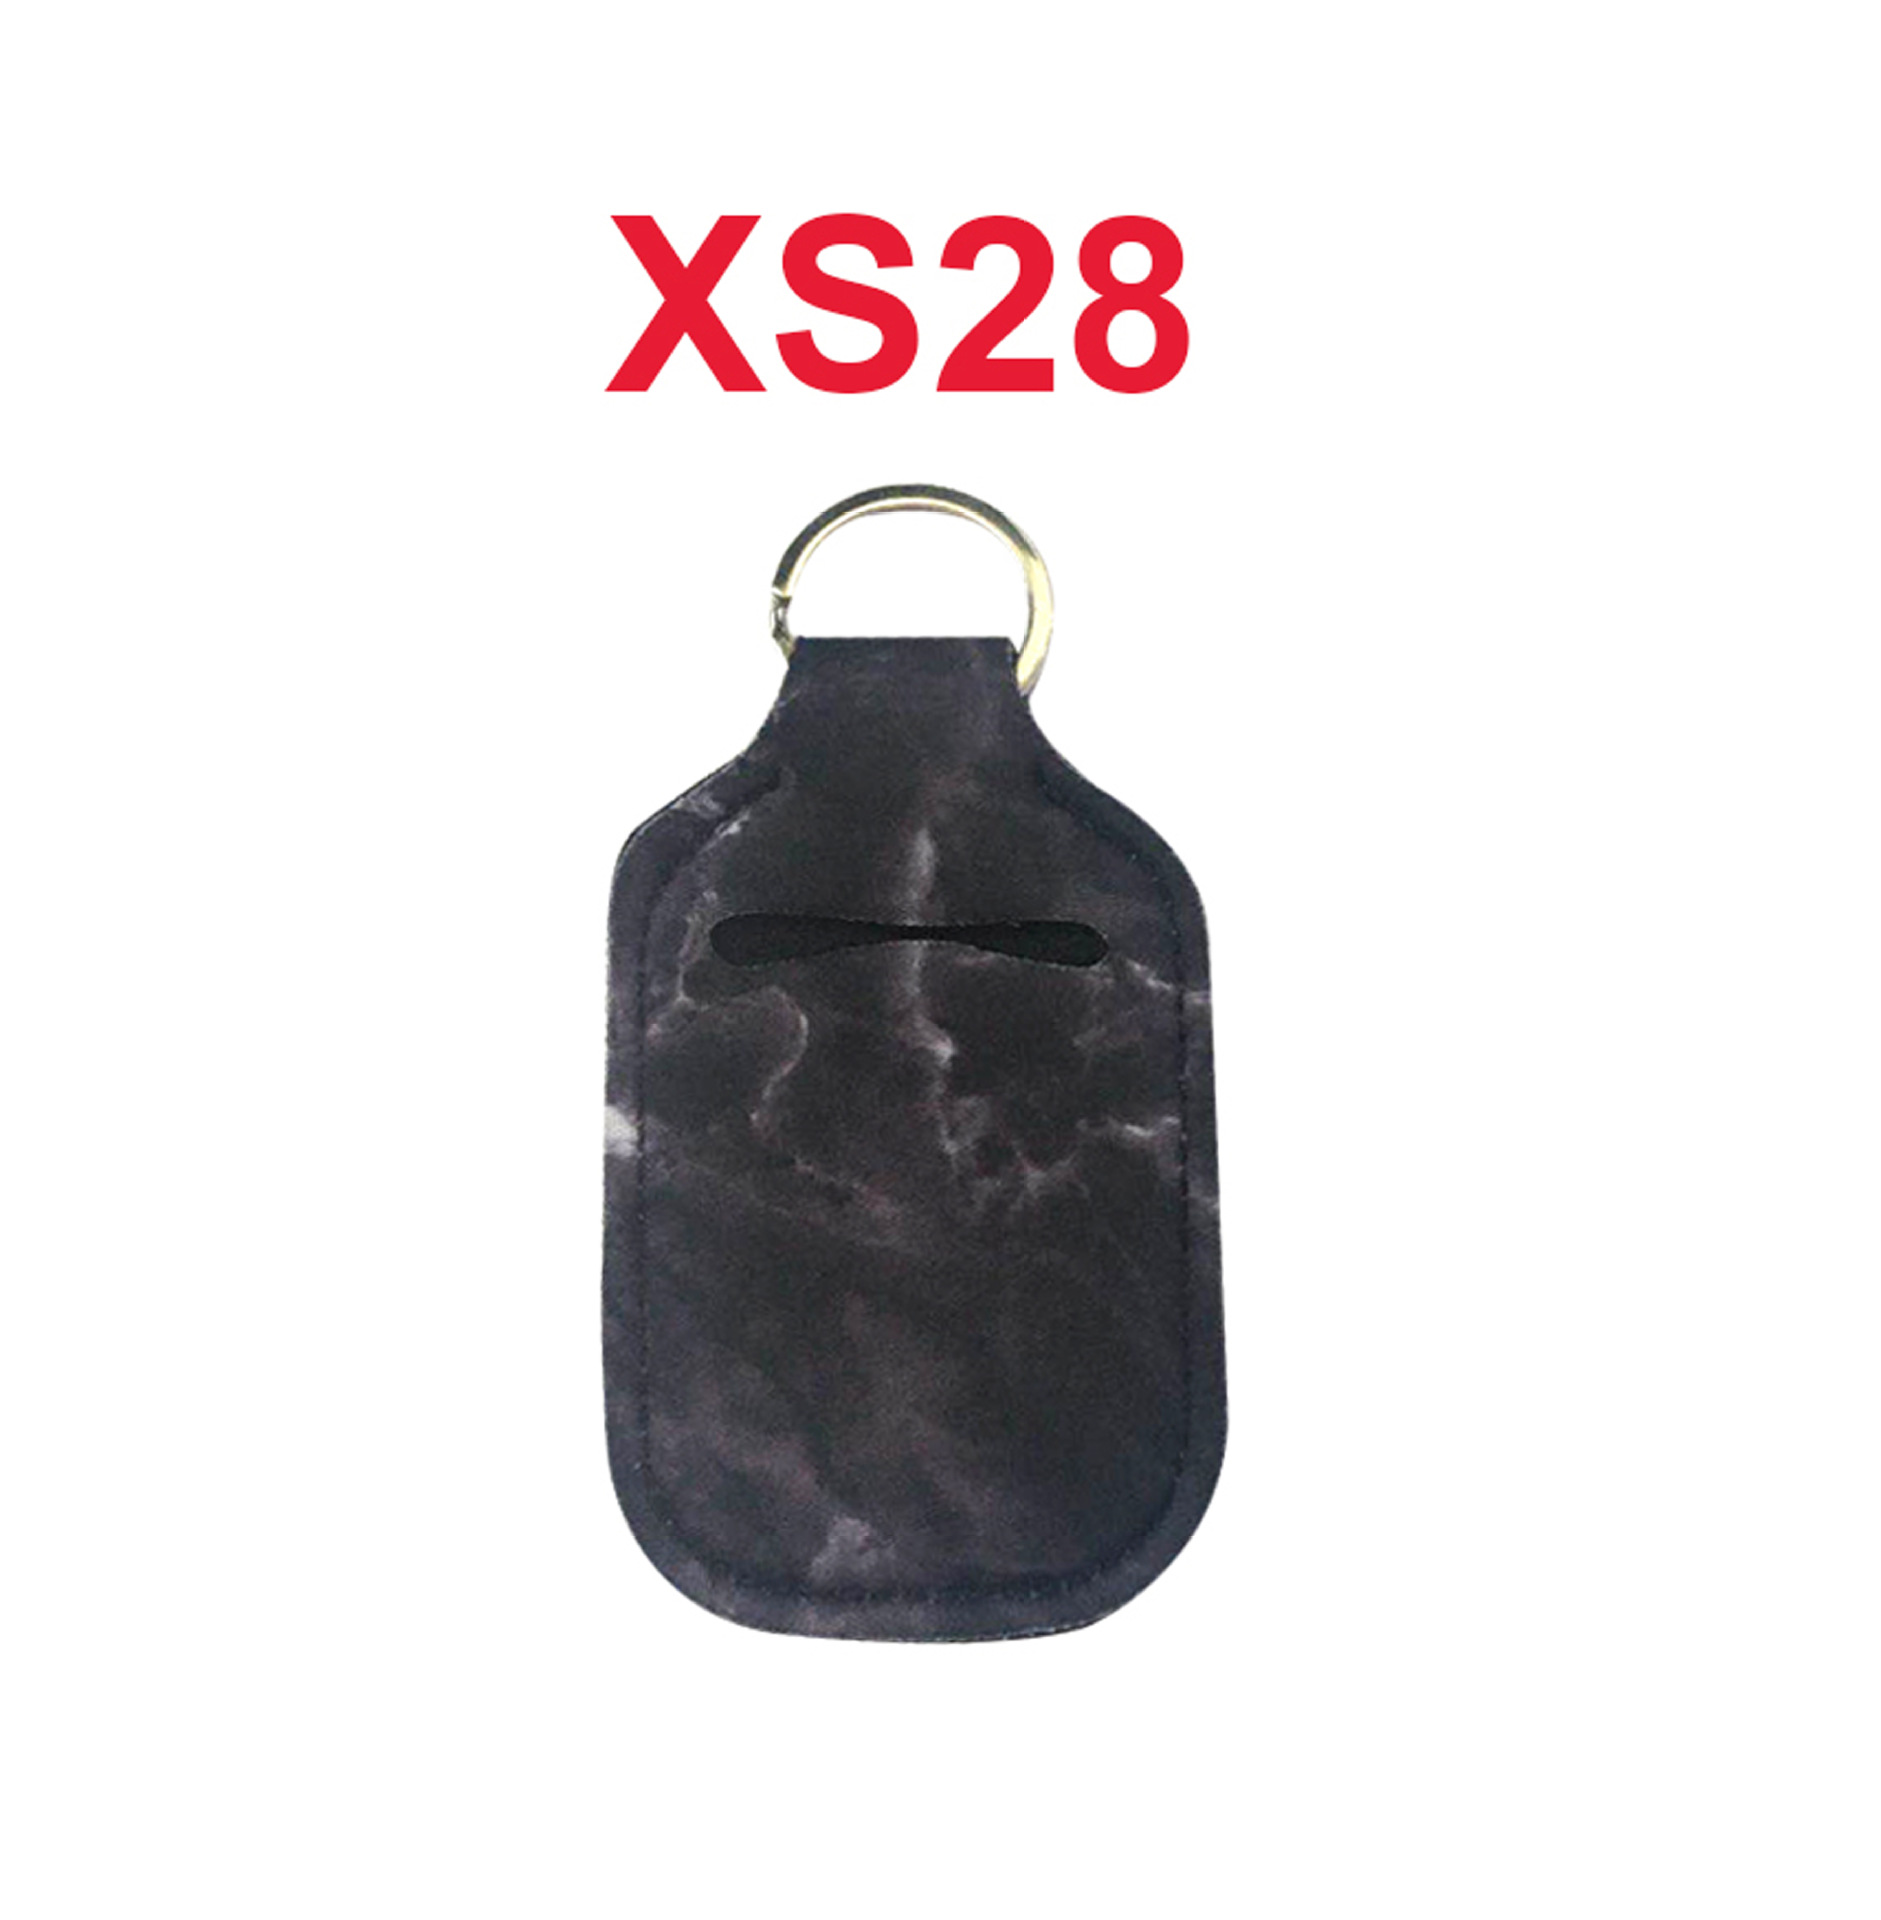 XS28